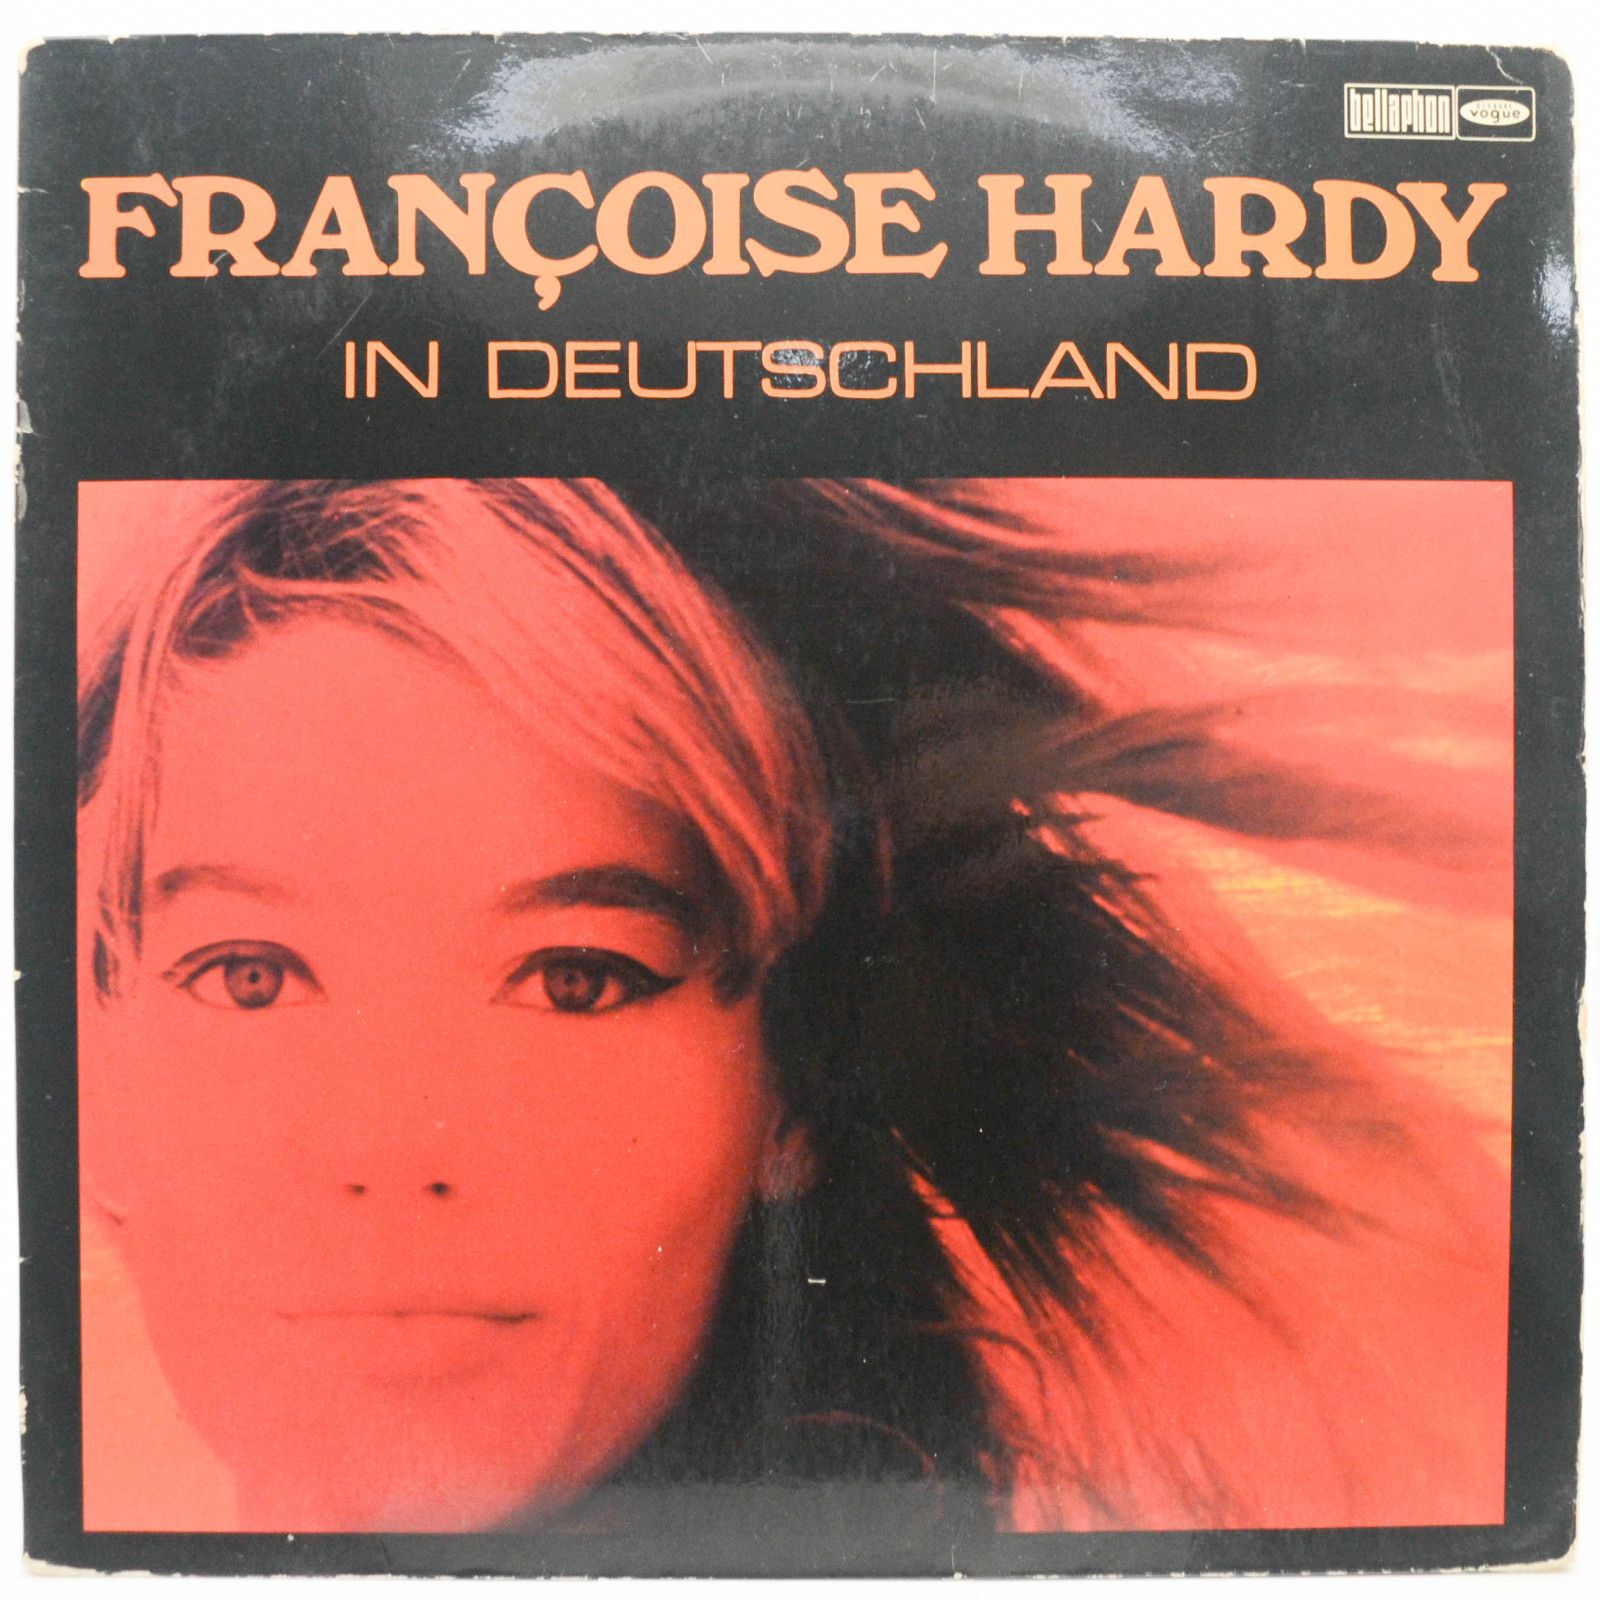 Françoise Hardy — Françoise Hardy In Deutschland, 1967